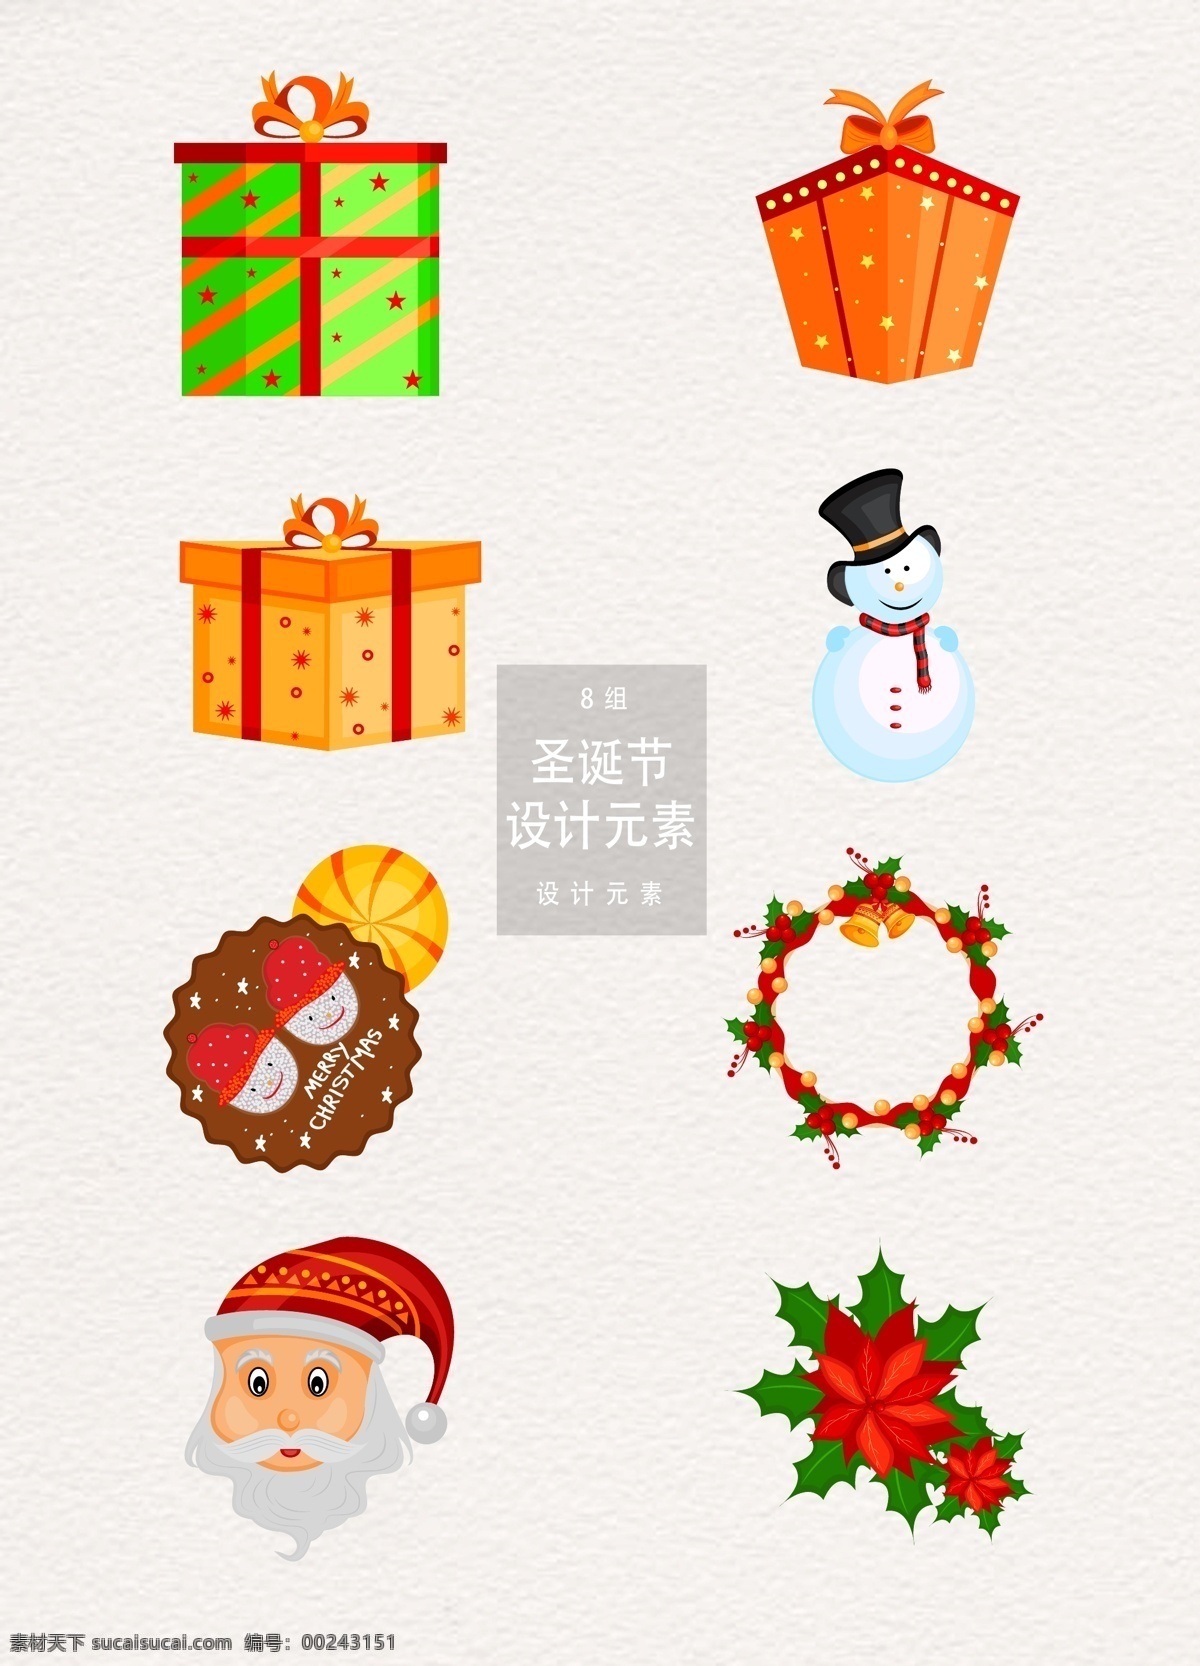 矢量 圣诞节 装饰设计 元素 设计元素 礼物 礼物盒 圣诞老人 圣诞 装饰图案 雪人